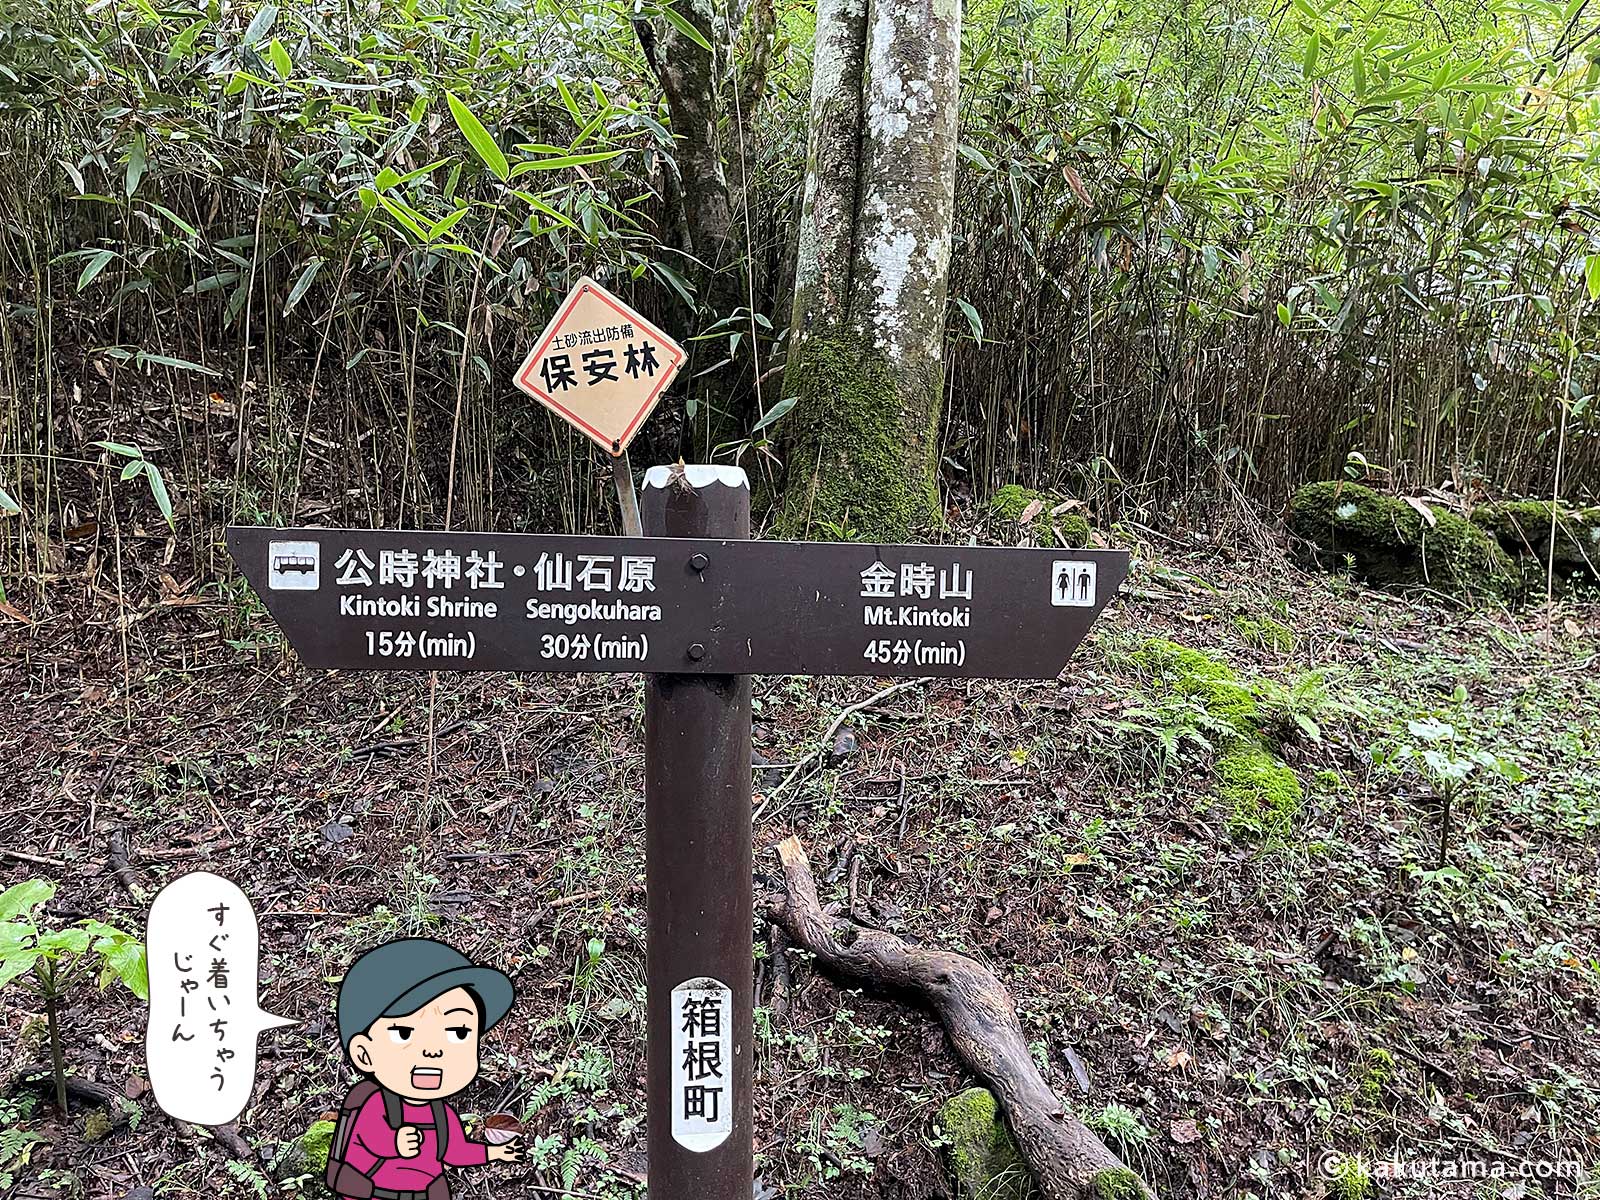 公時神社ルートの道標の写真と登山者のイラスト